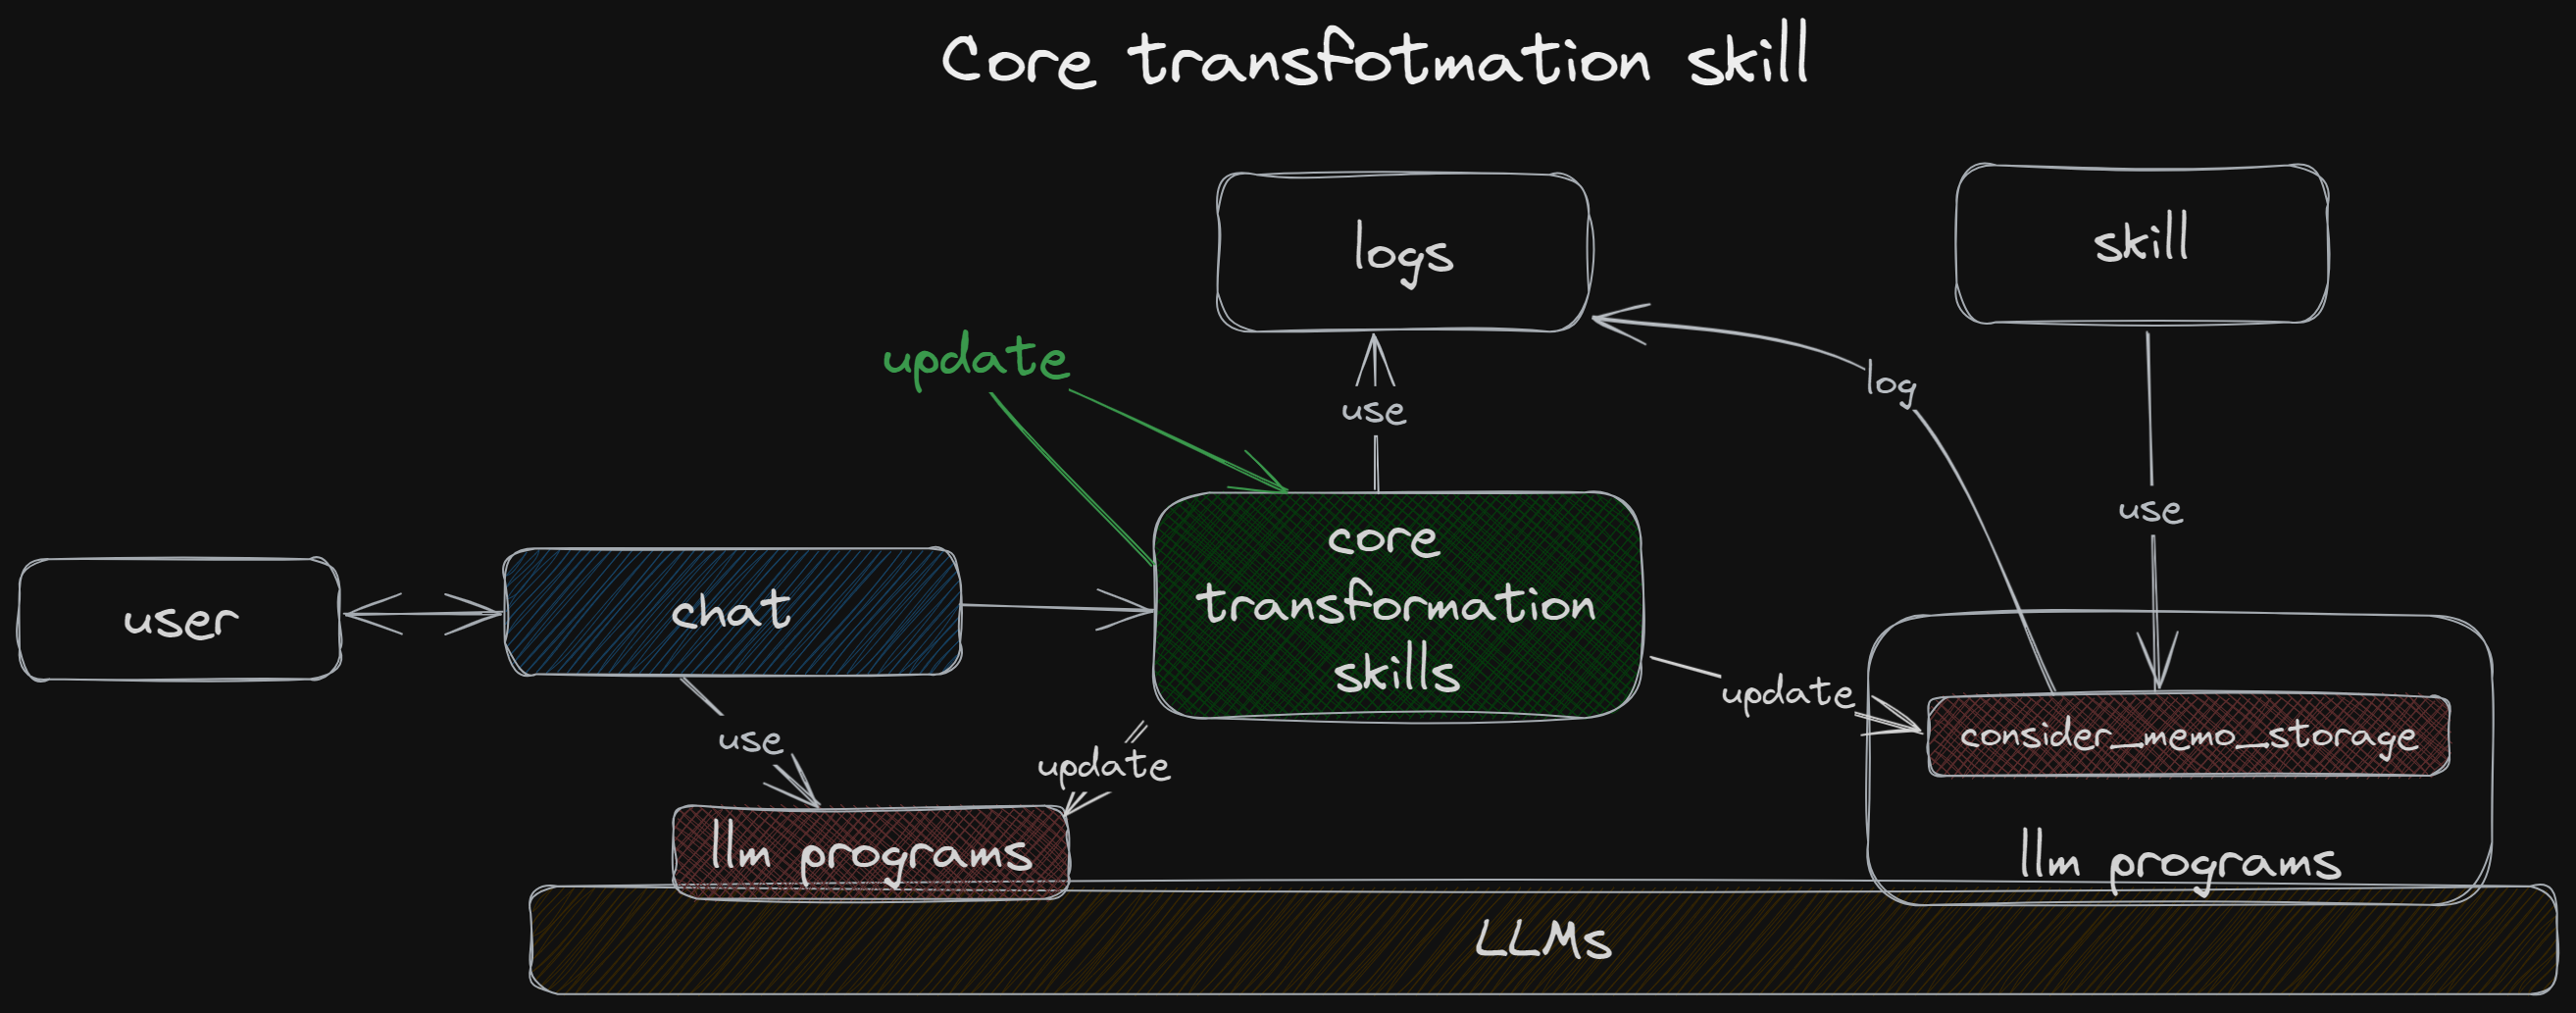 core transformation skill